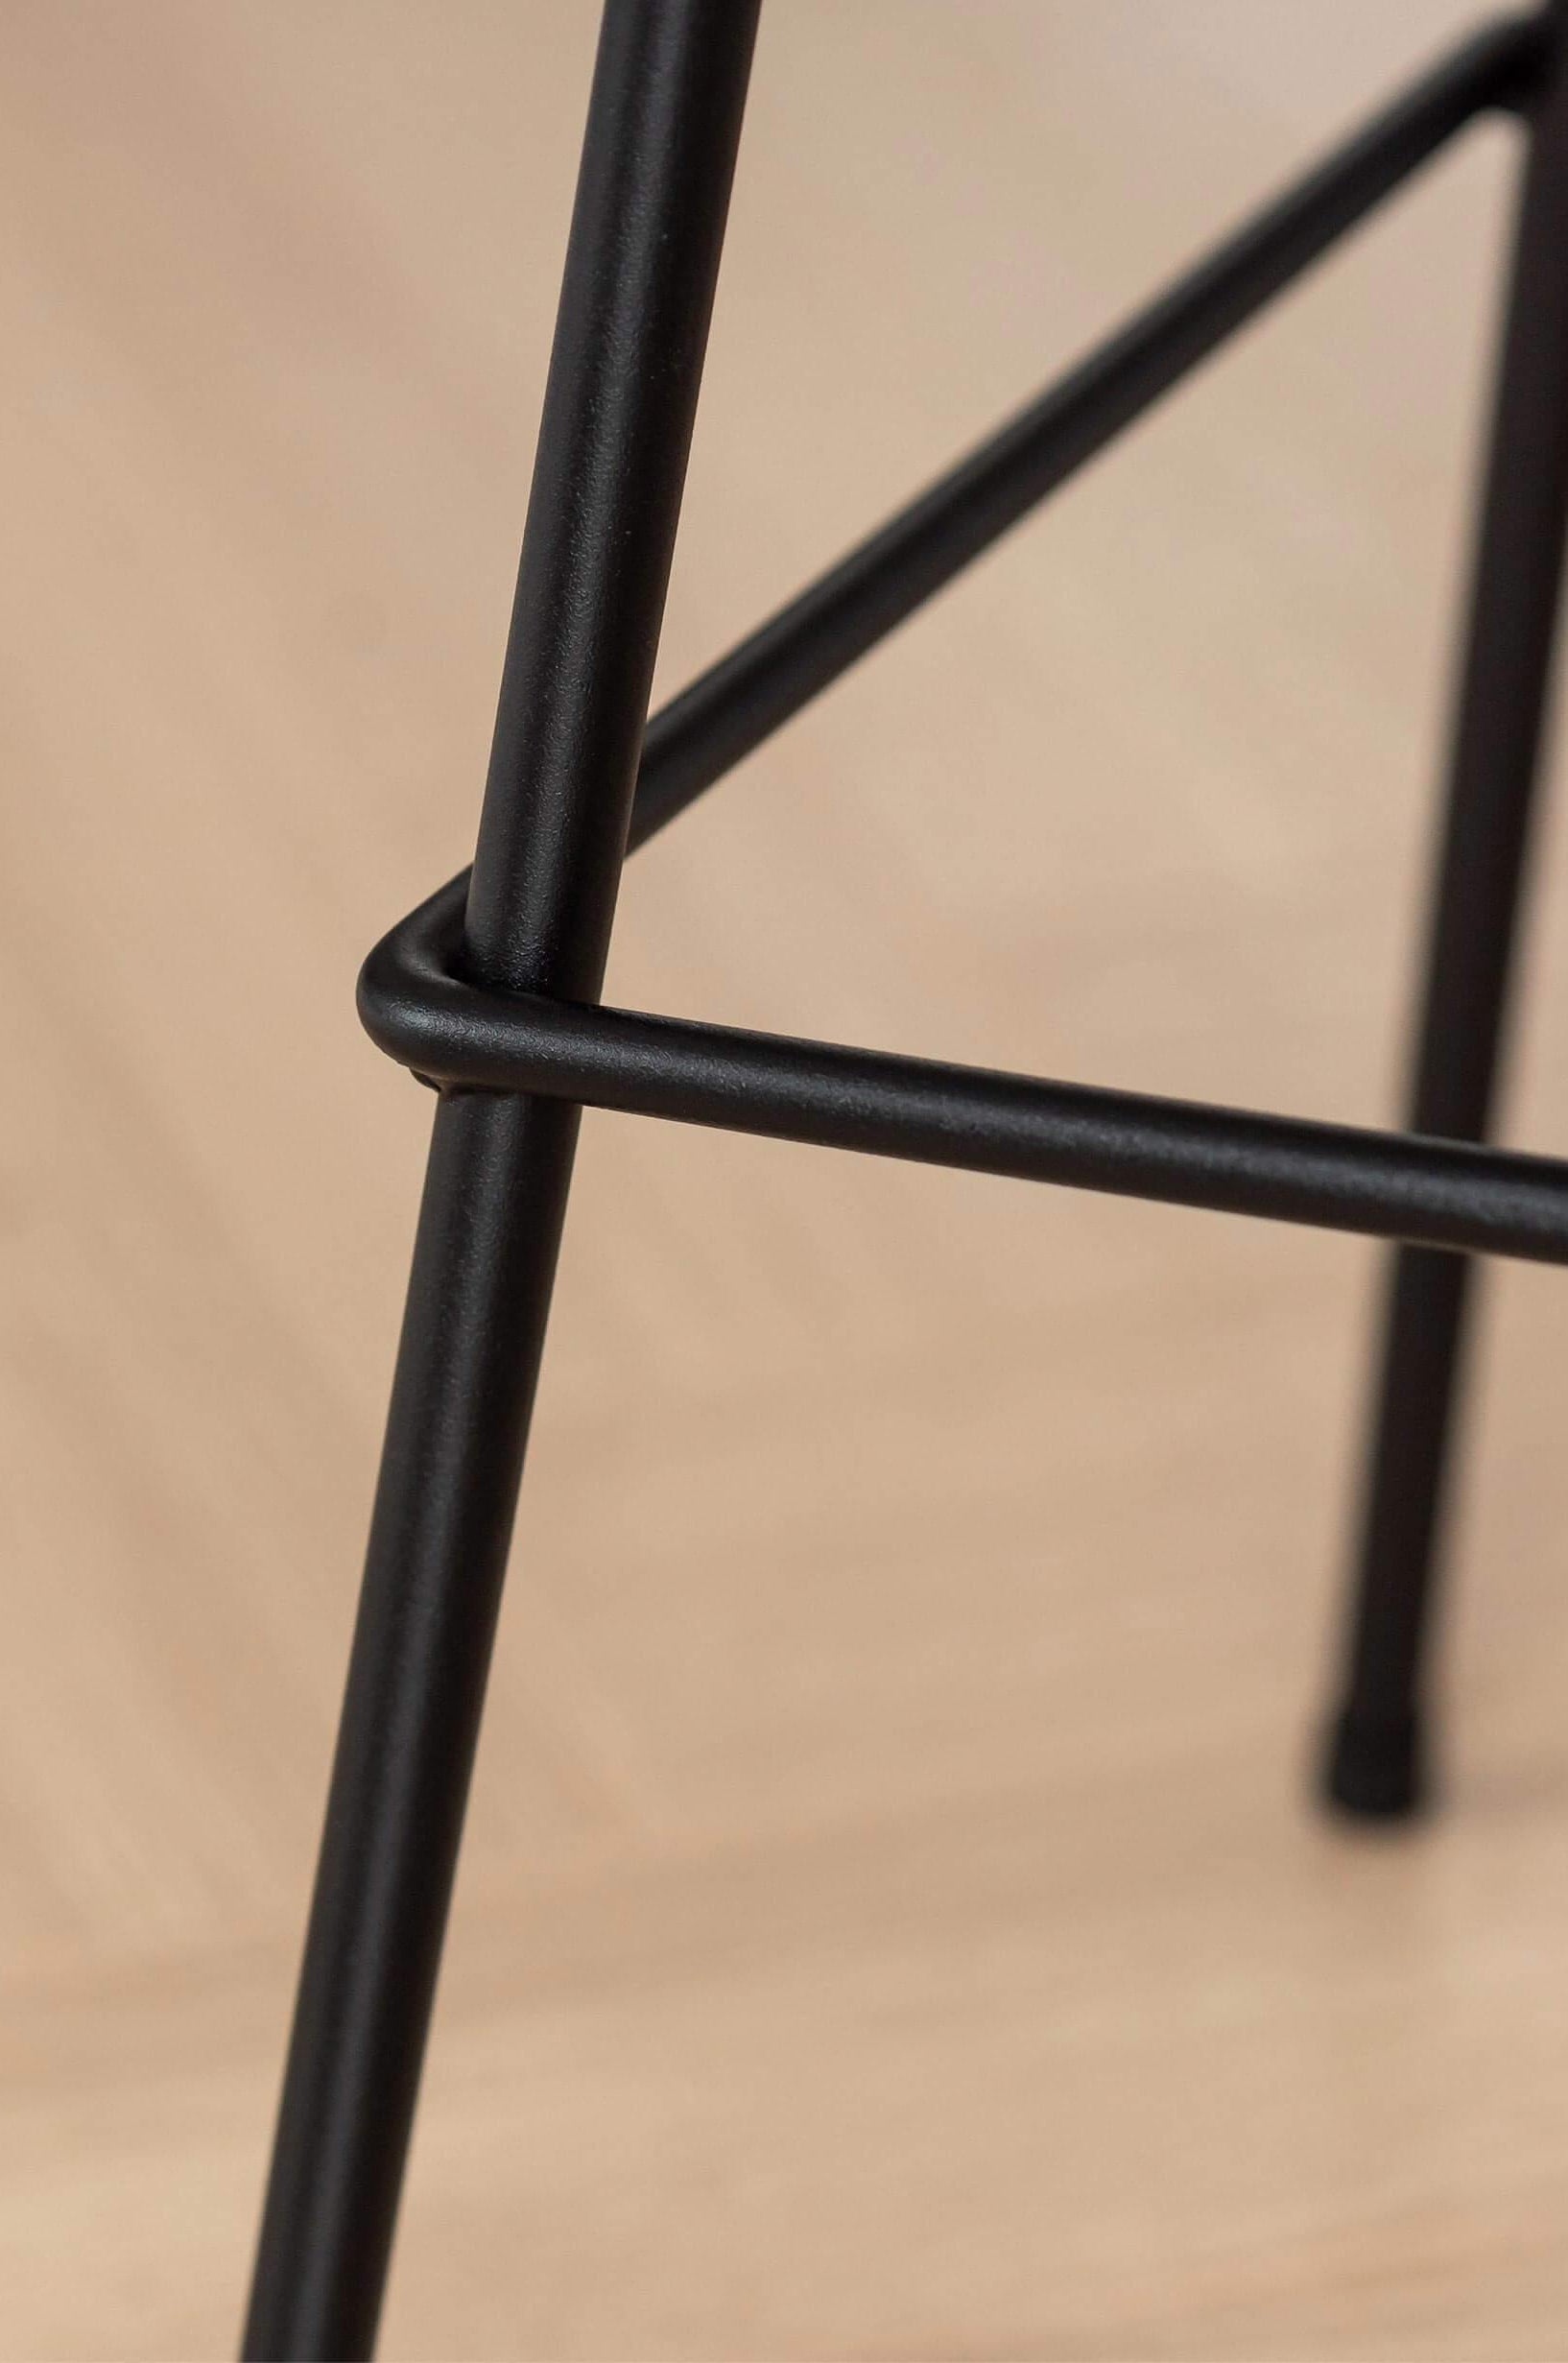 Barhocker aus schwarzem Metall mit einer Sitzfläche aus Massiv-holz | Metallbude